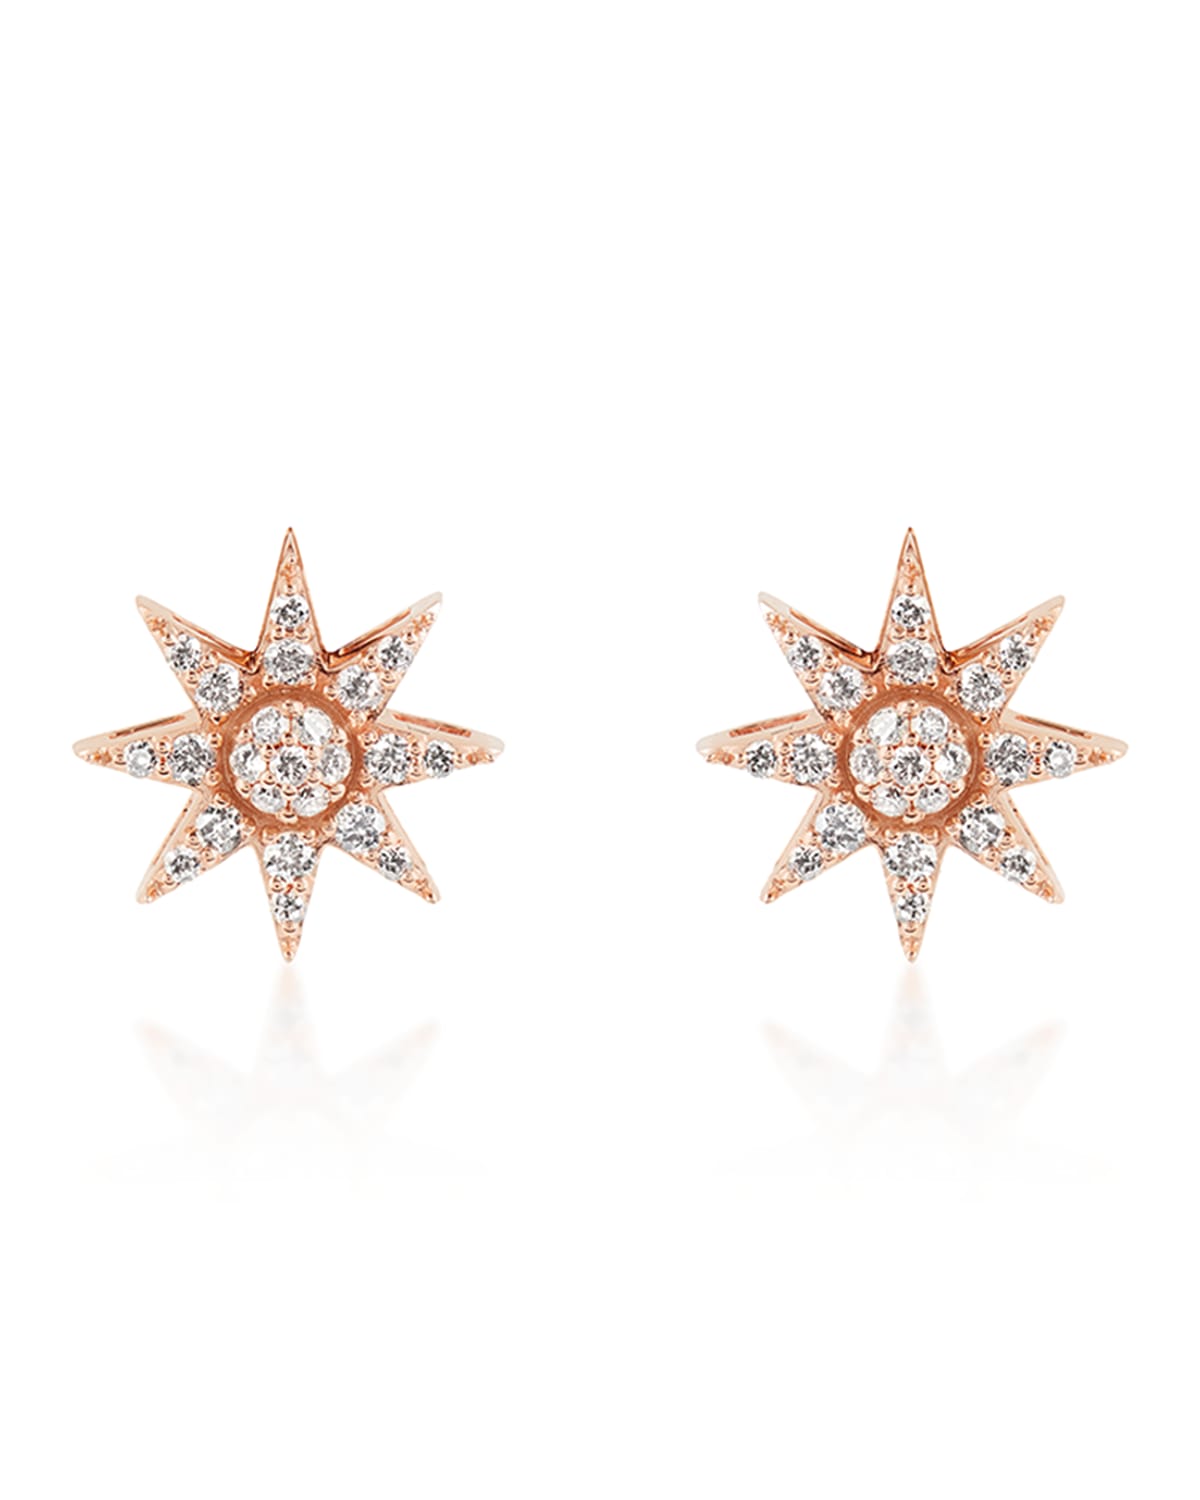 BeeGoddess Venus Star 14k Diamond Stud Earrings